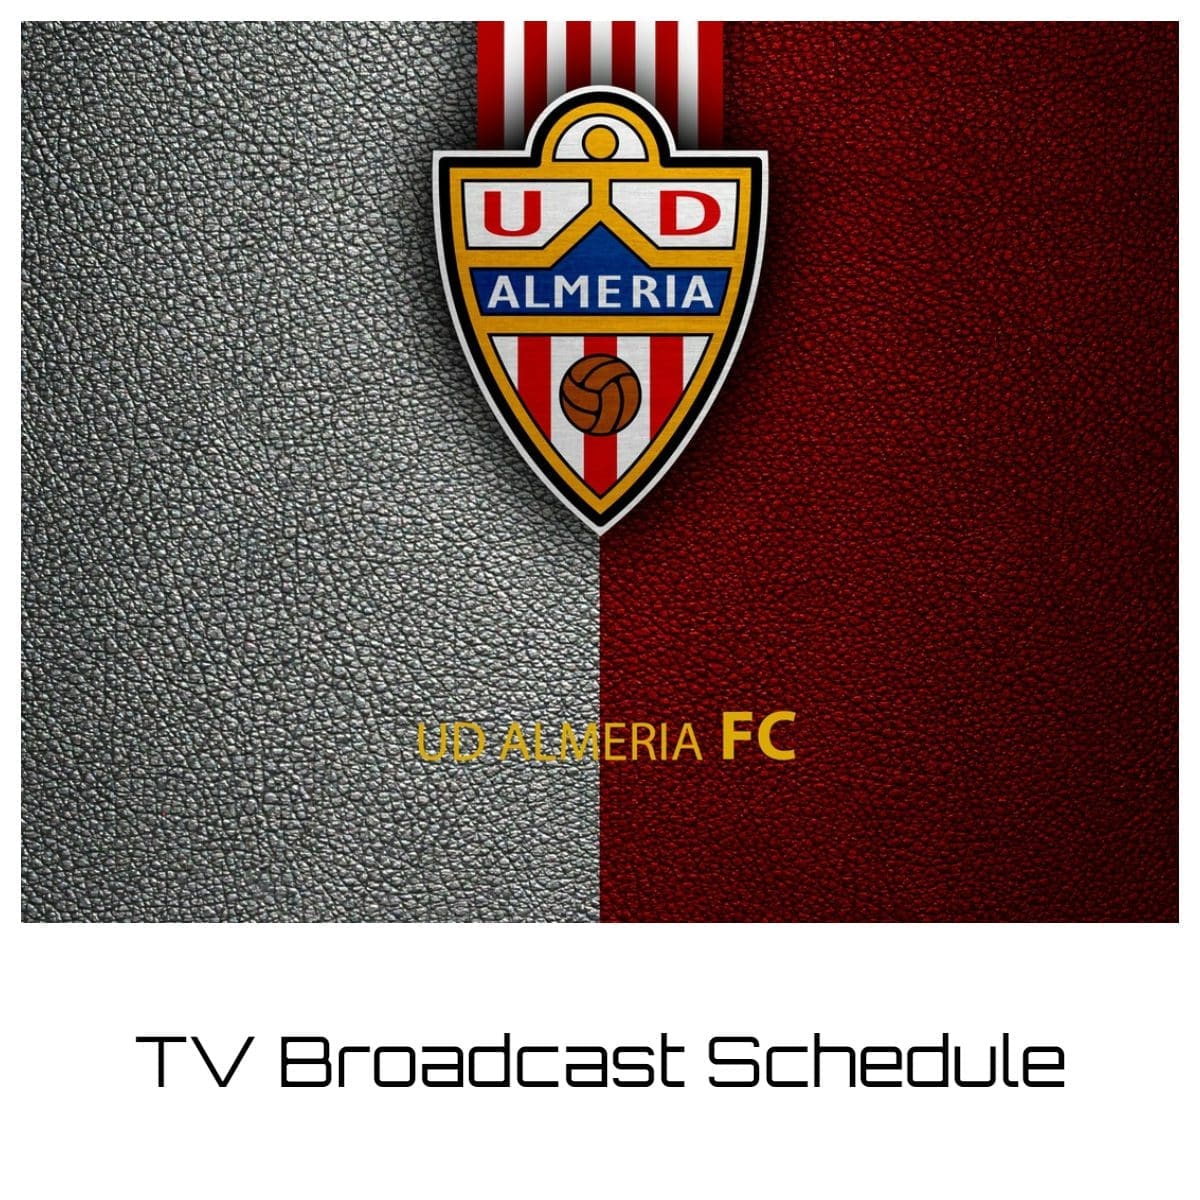 Almeria TV Broadcast Schedule